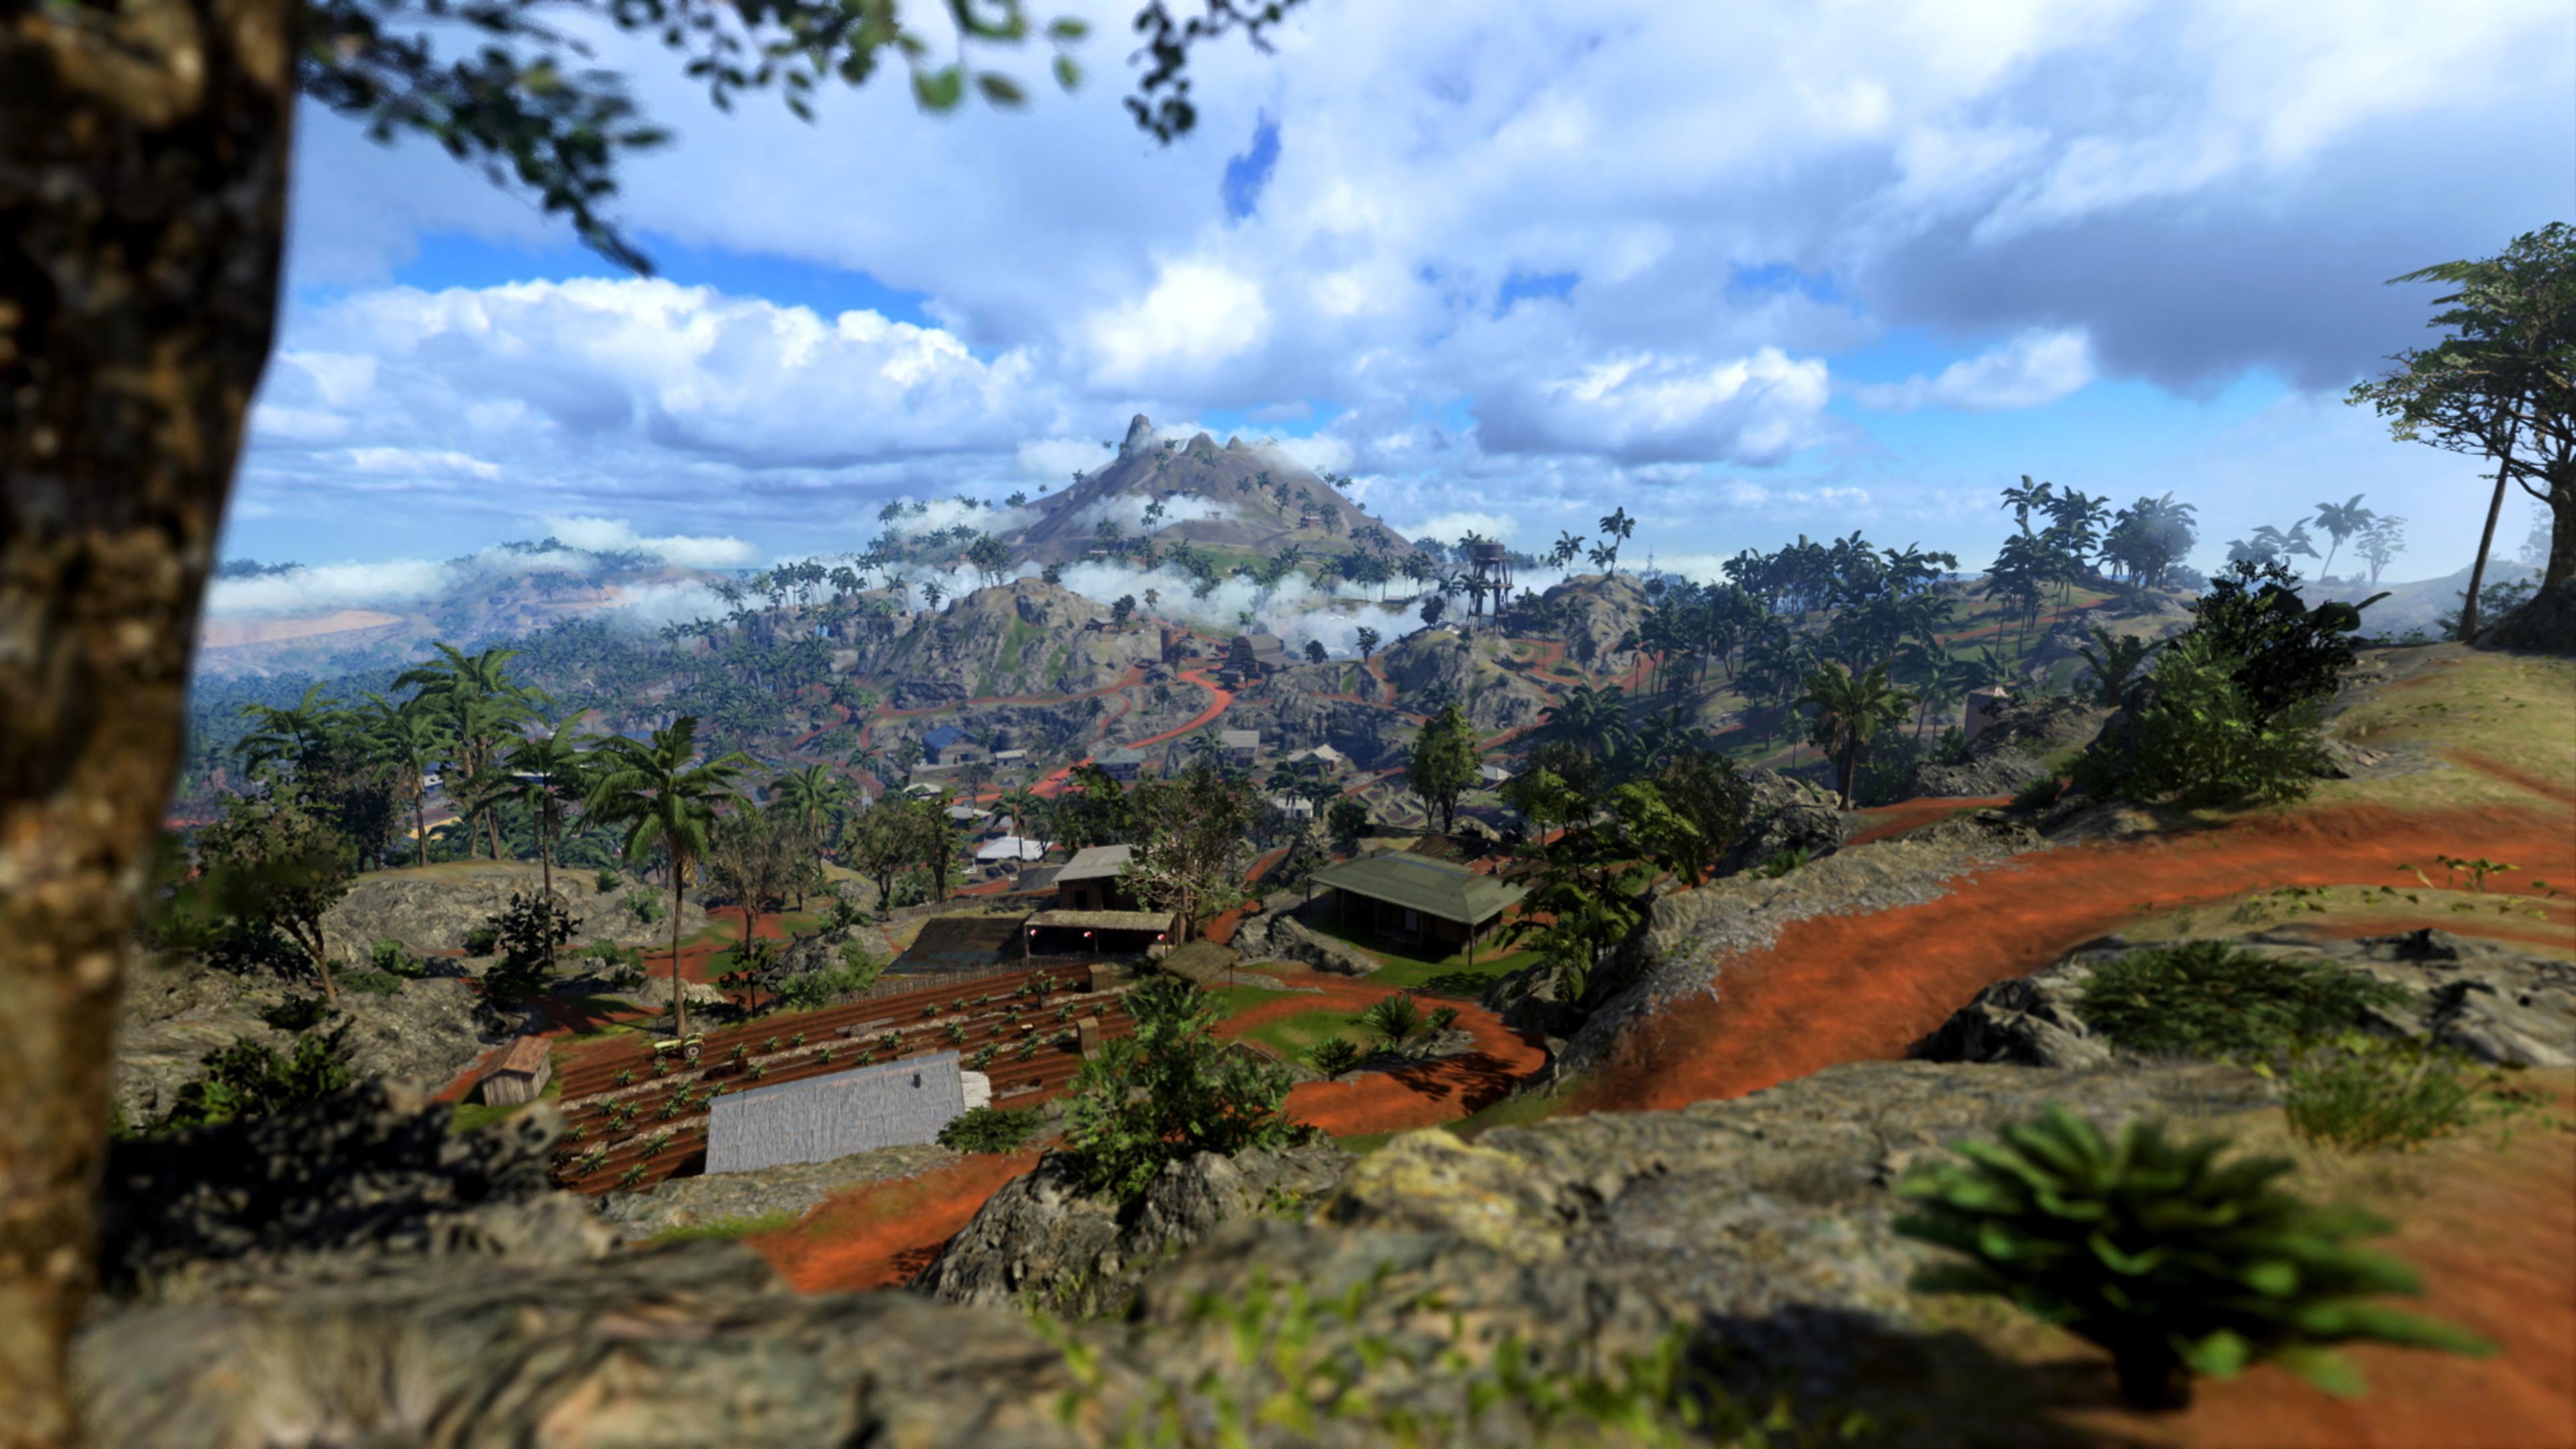 Call of Duty Vanguard - captura de tela mostrando cenário de novo mapa de Warzone, Caldera